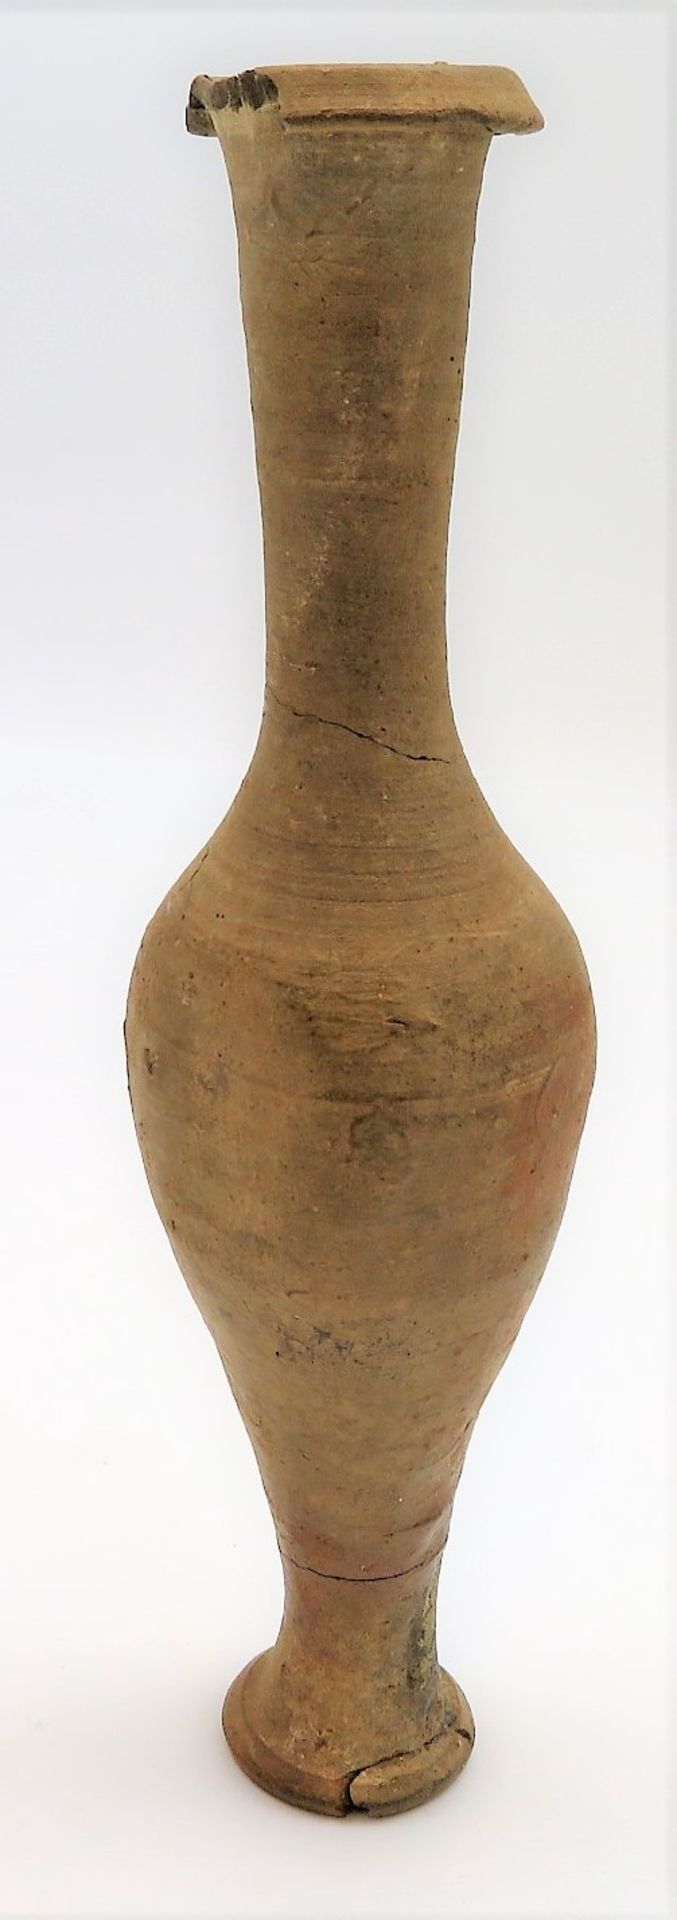 Antike Flasche, Ausgrabung, Ton, h 17,5 cm, d 5 cm.